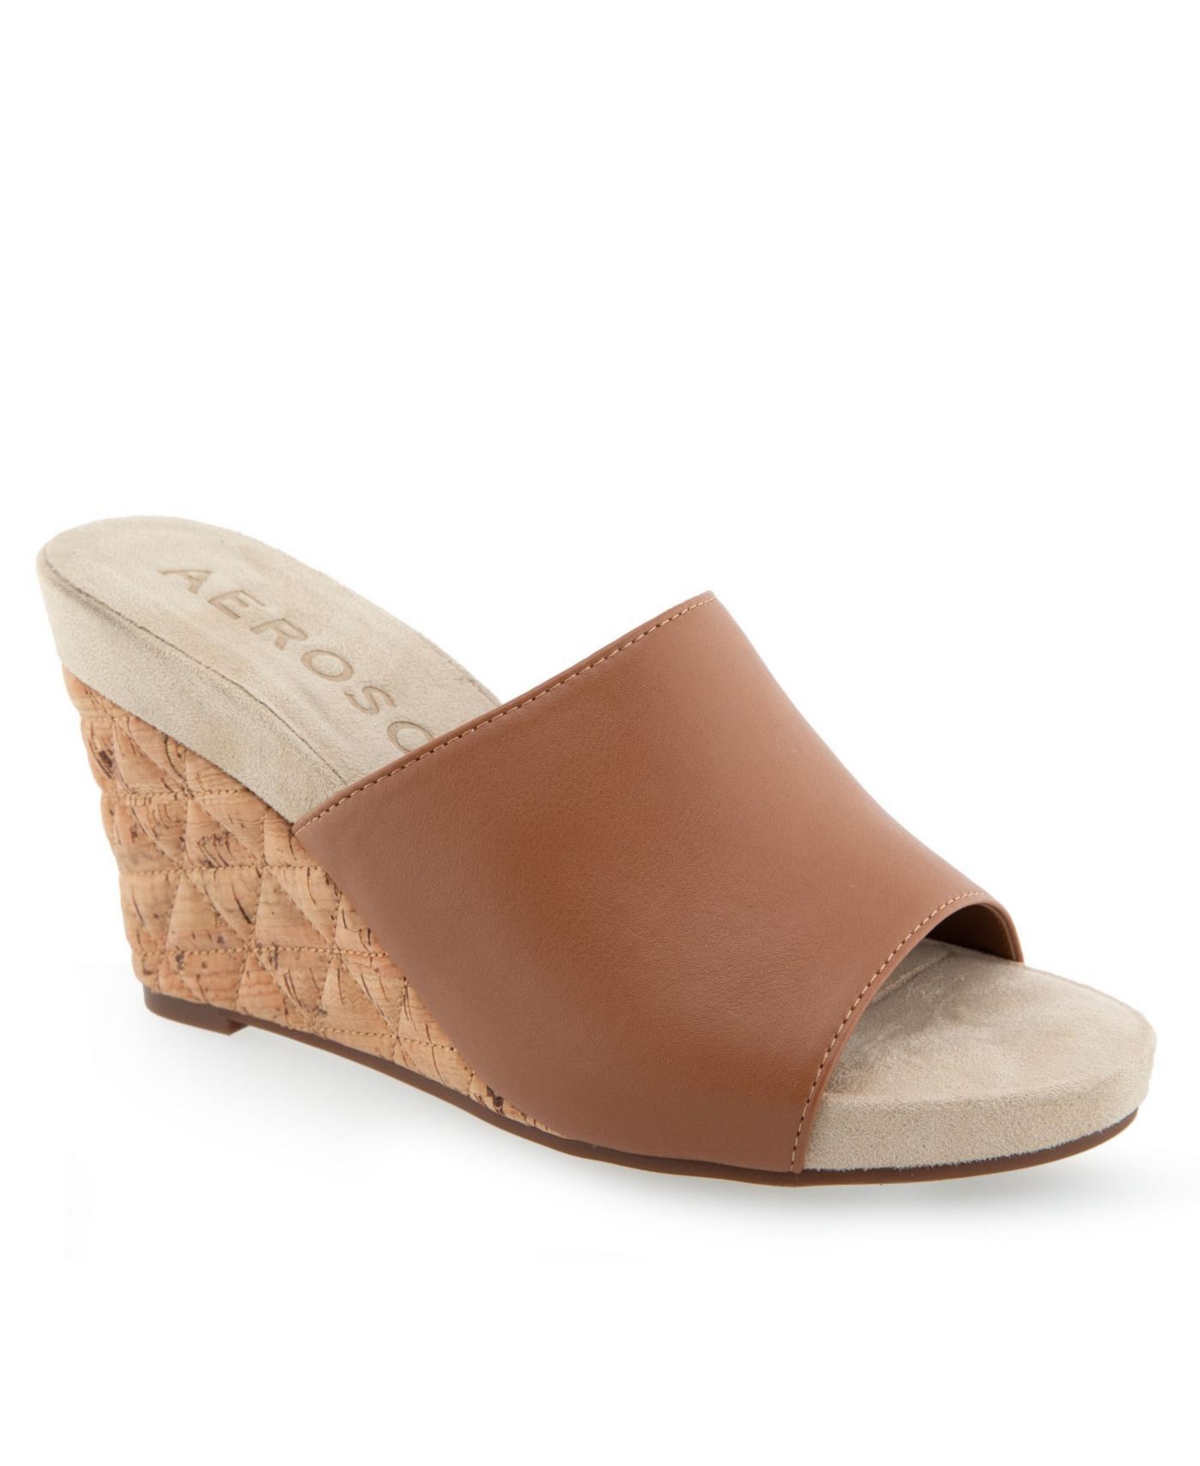 Shop Aerosoles Women's Pierce Open Toe Wedge Sandals In Tan Polyurethane Leather